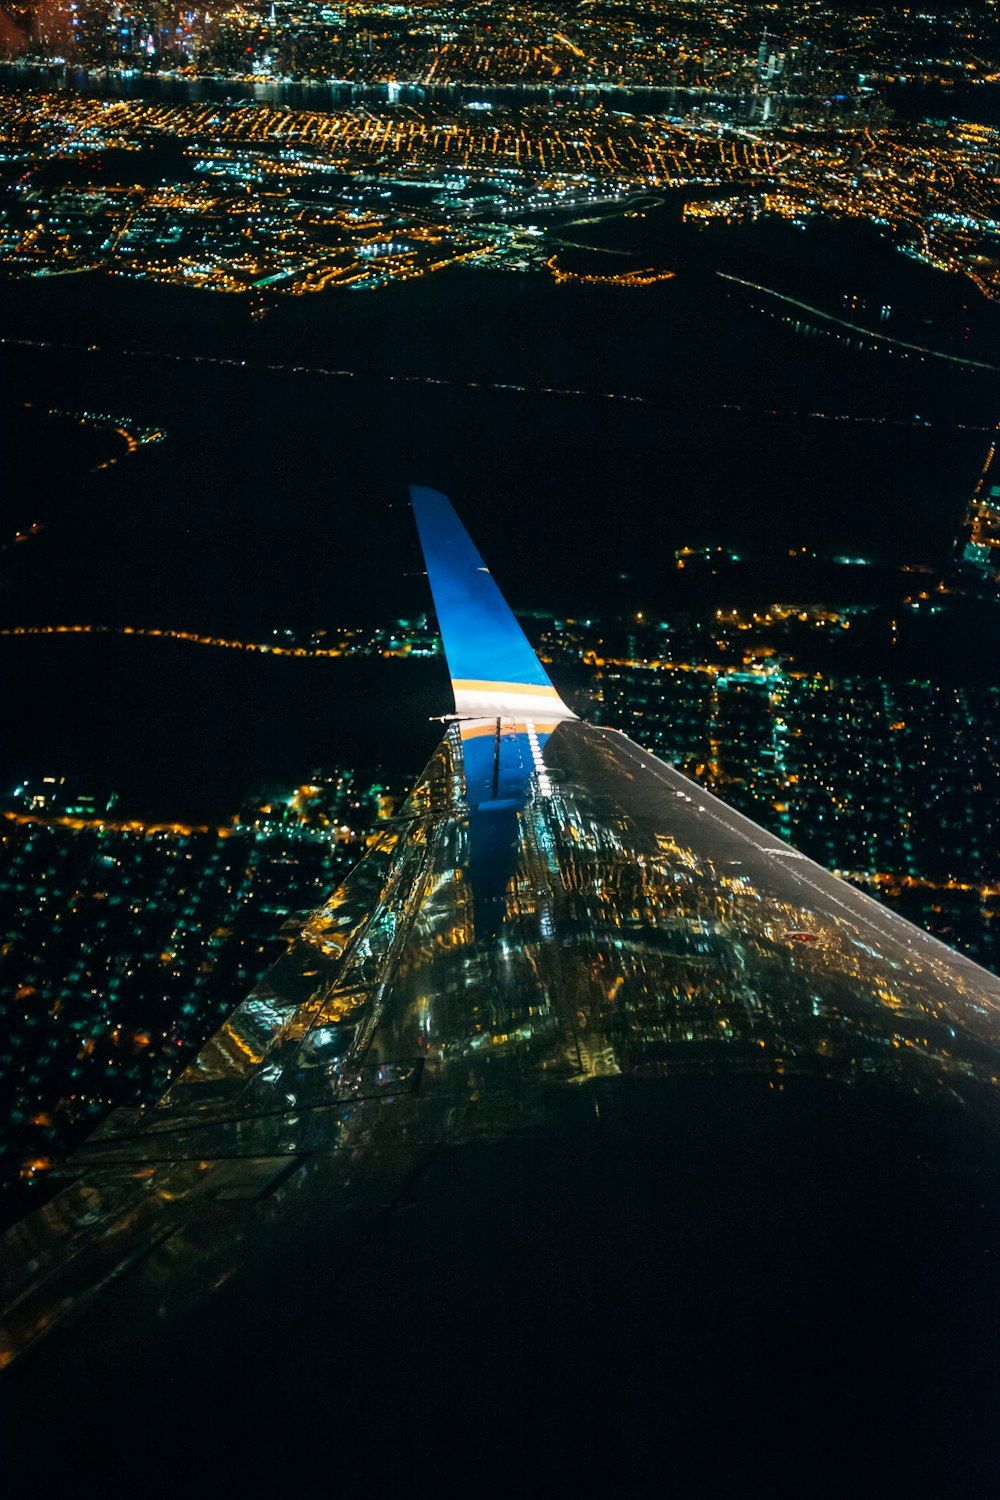 Une aile d’avion survolant une ville la nuit